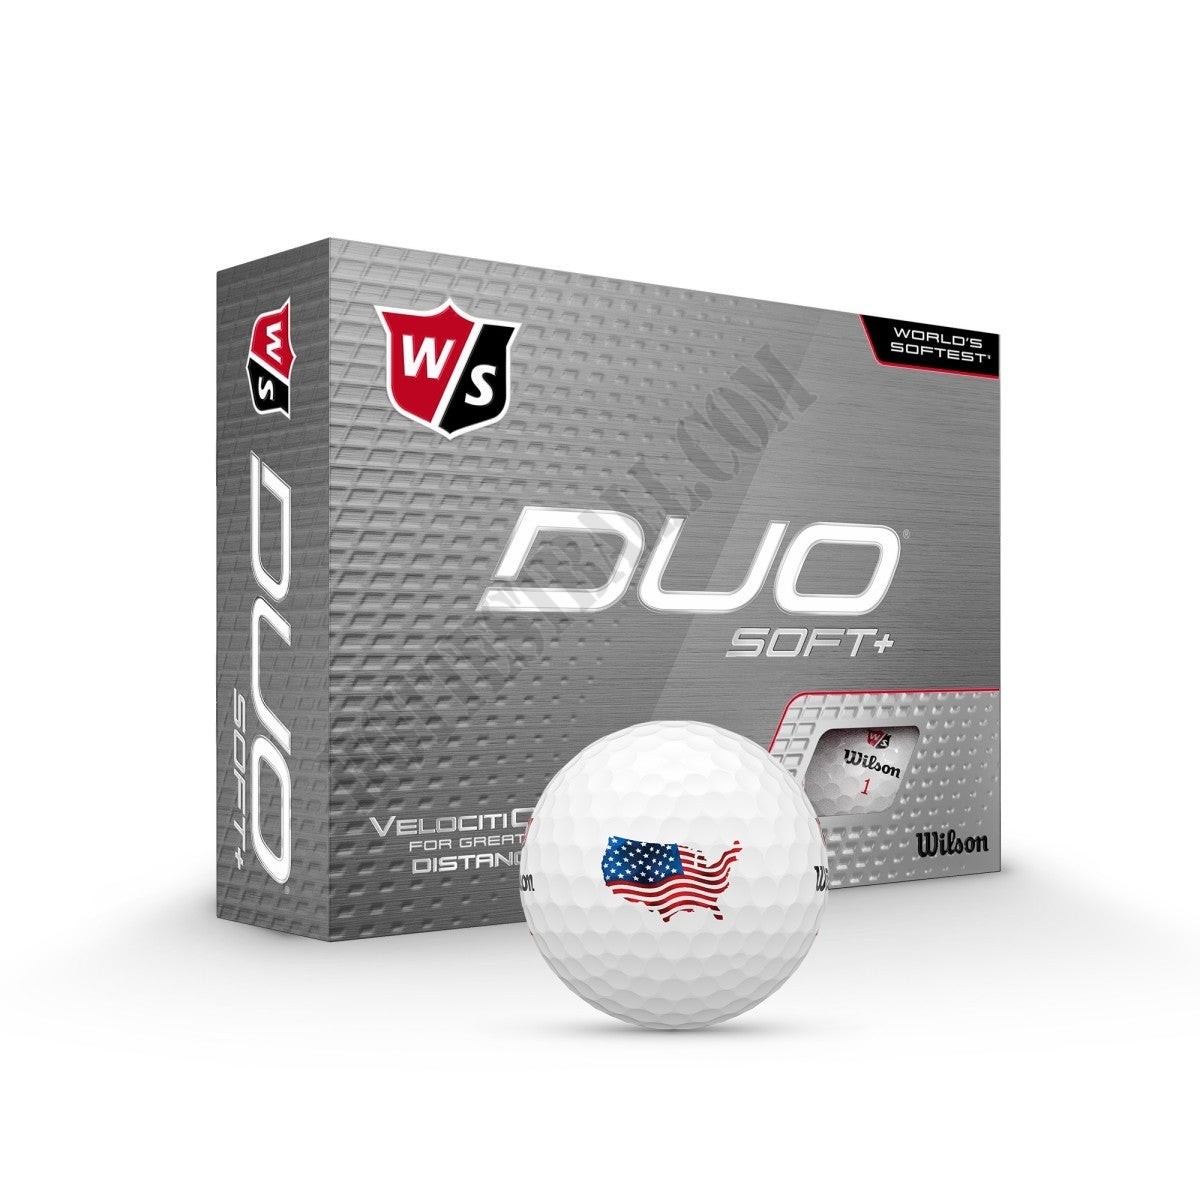 DUO Soft+ USA Golf Balls - Wilson Discount Store - -1